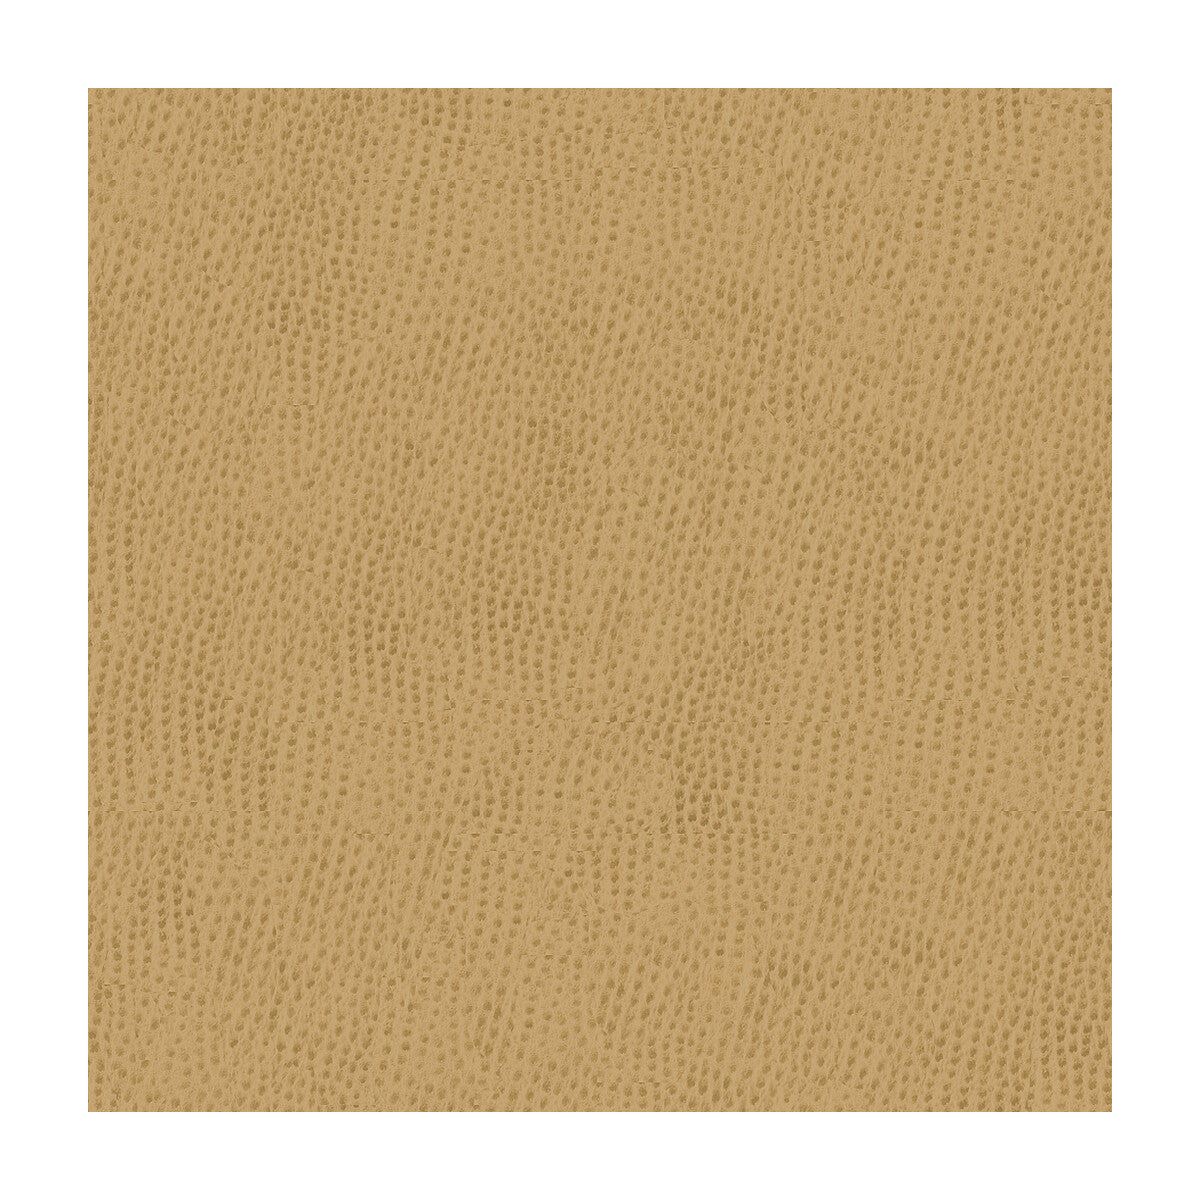 Kravet Smart fabric in ossy-1616 color - pattern OSSY.1616.0 - by Kravet Smart